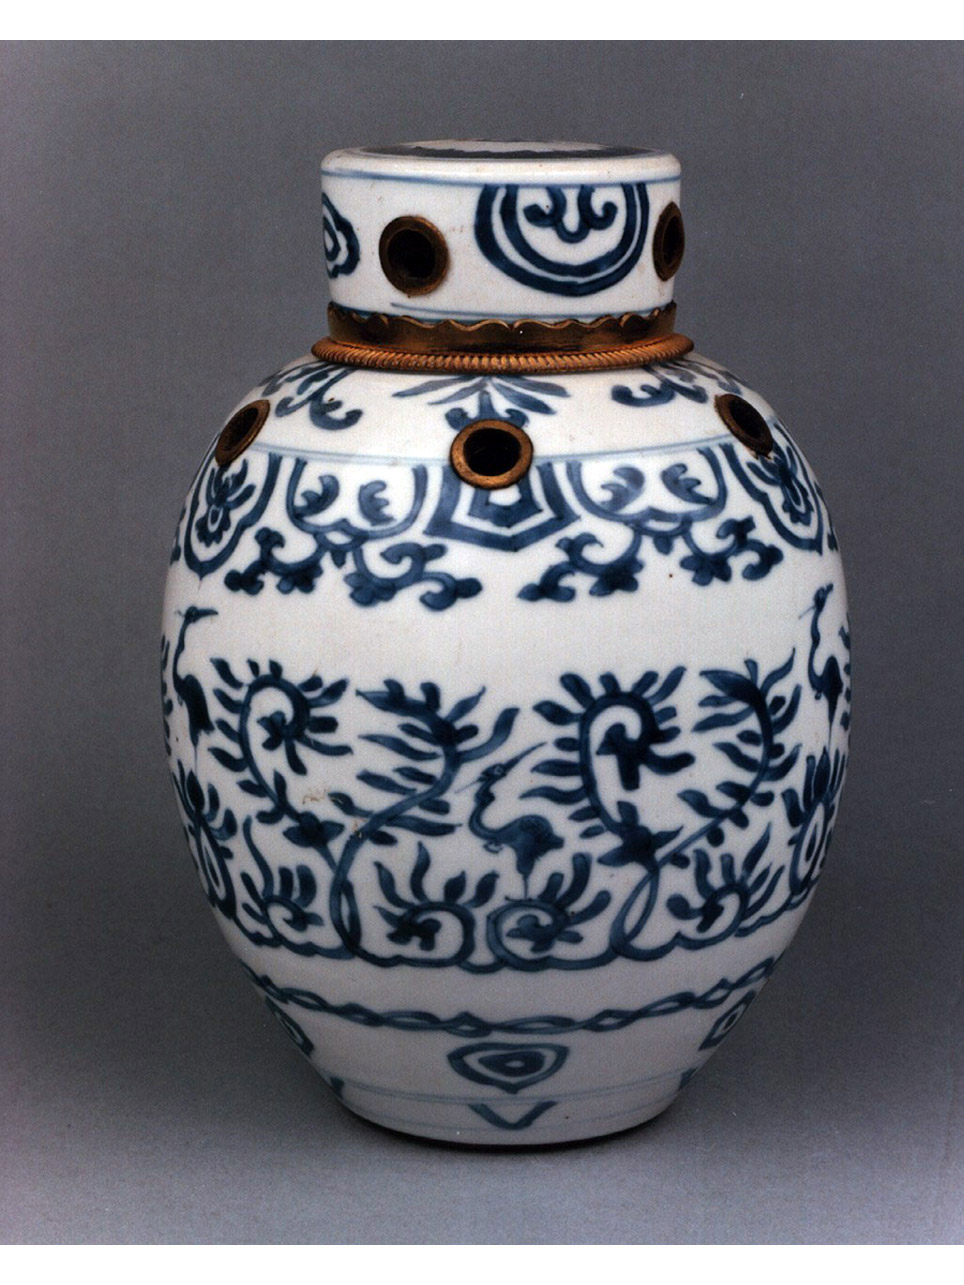 motivi decorativi vegetali stilizzati (bruciaprofumi) - manifattura cinese, produzione europea (secc. XVII/ XVIII)